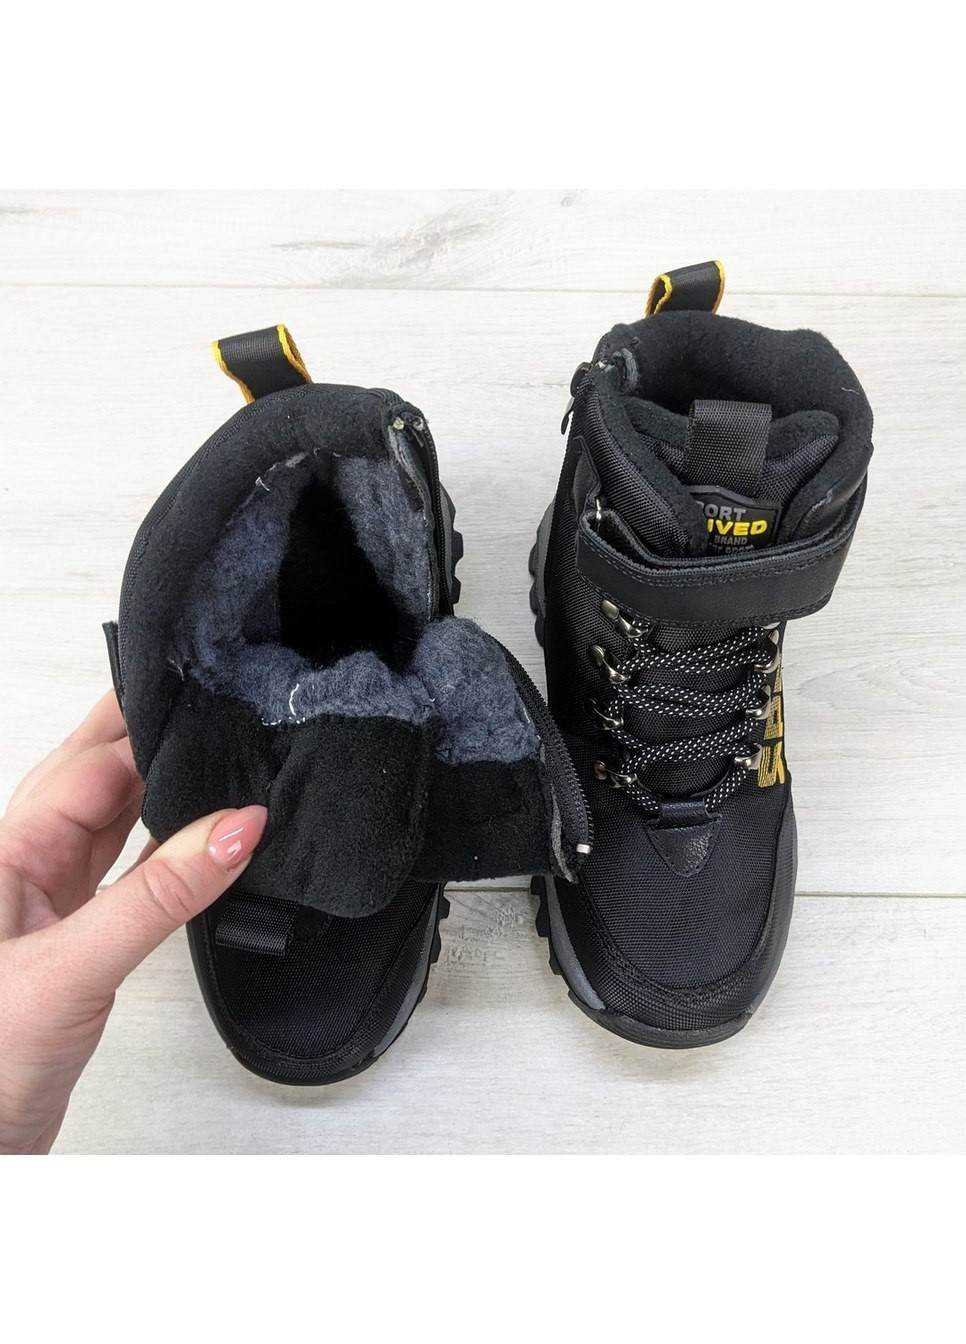 Черные повседневные зимние ботинки зимние для мальчика детские Башили